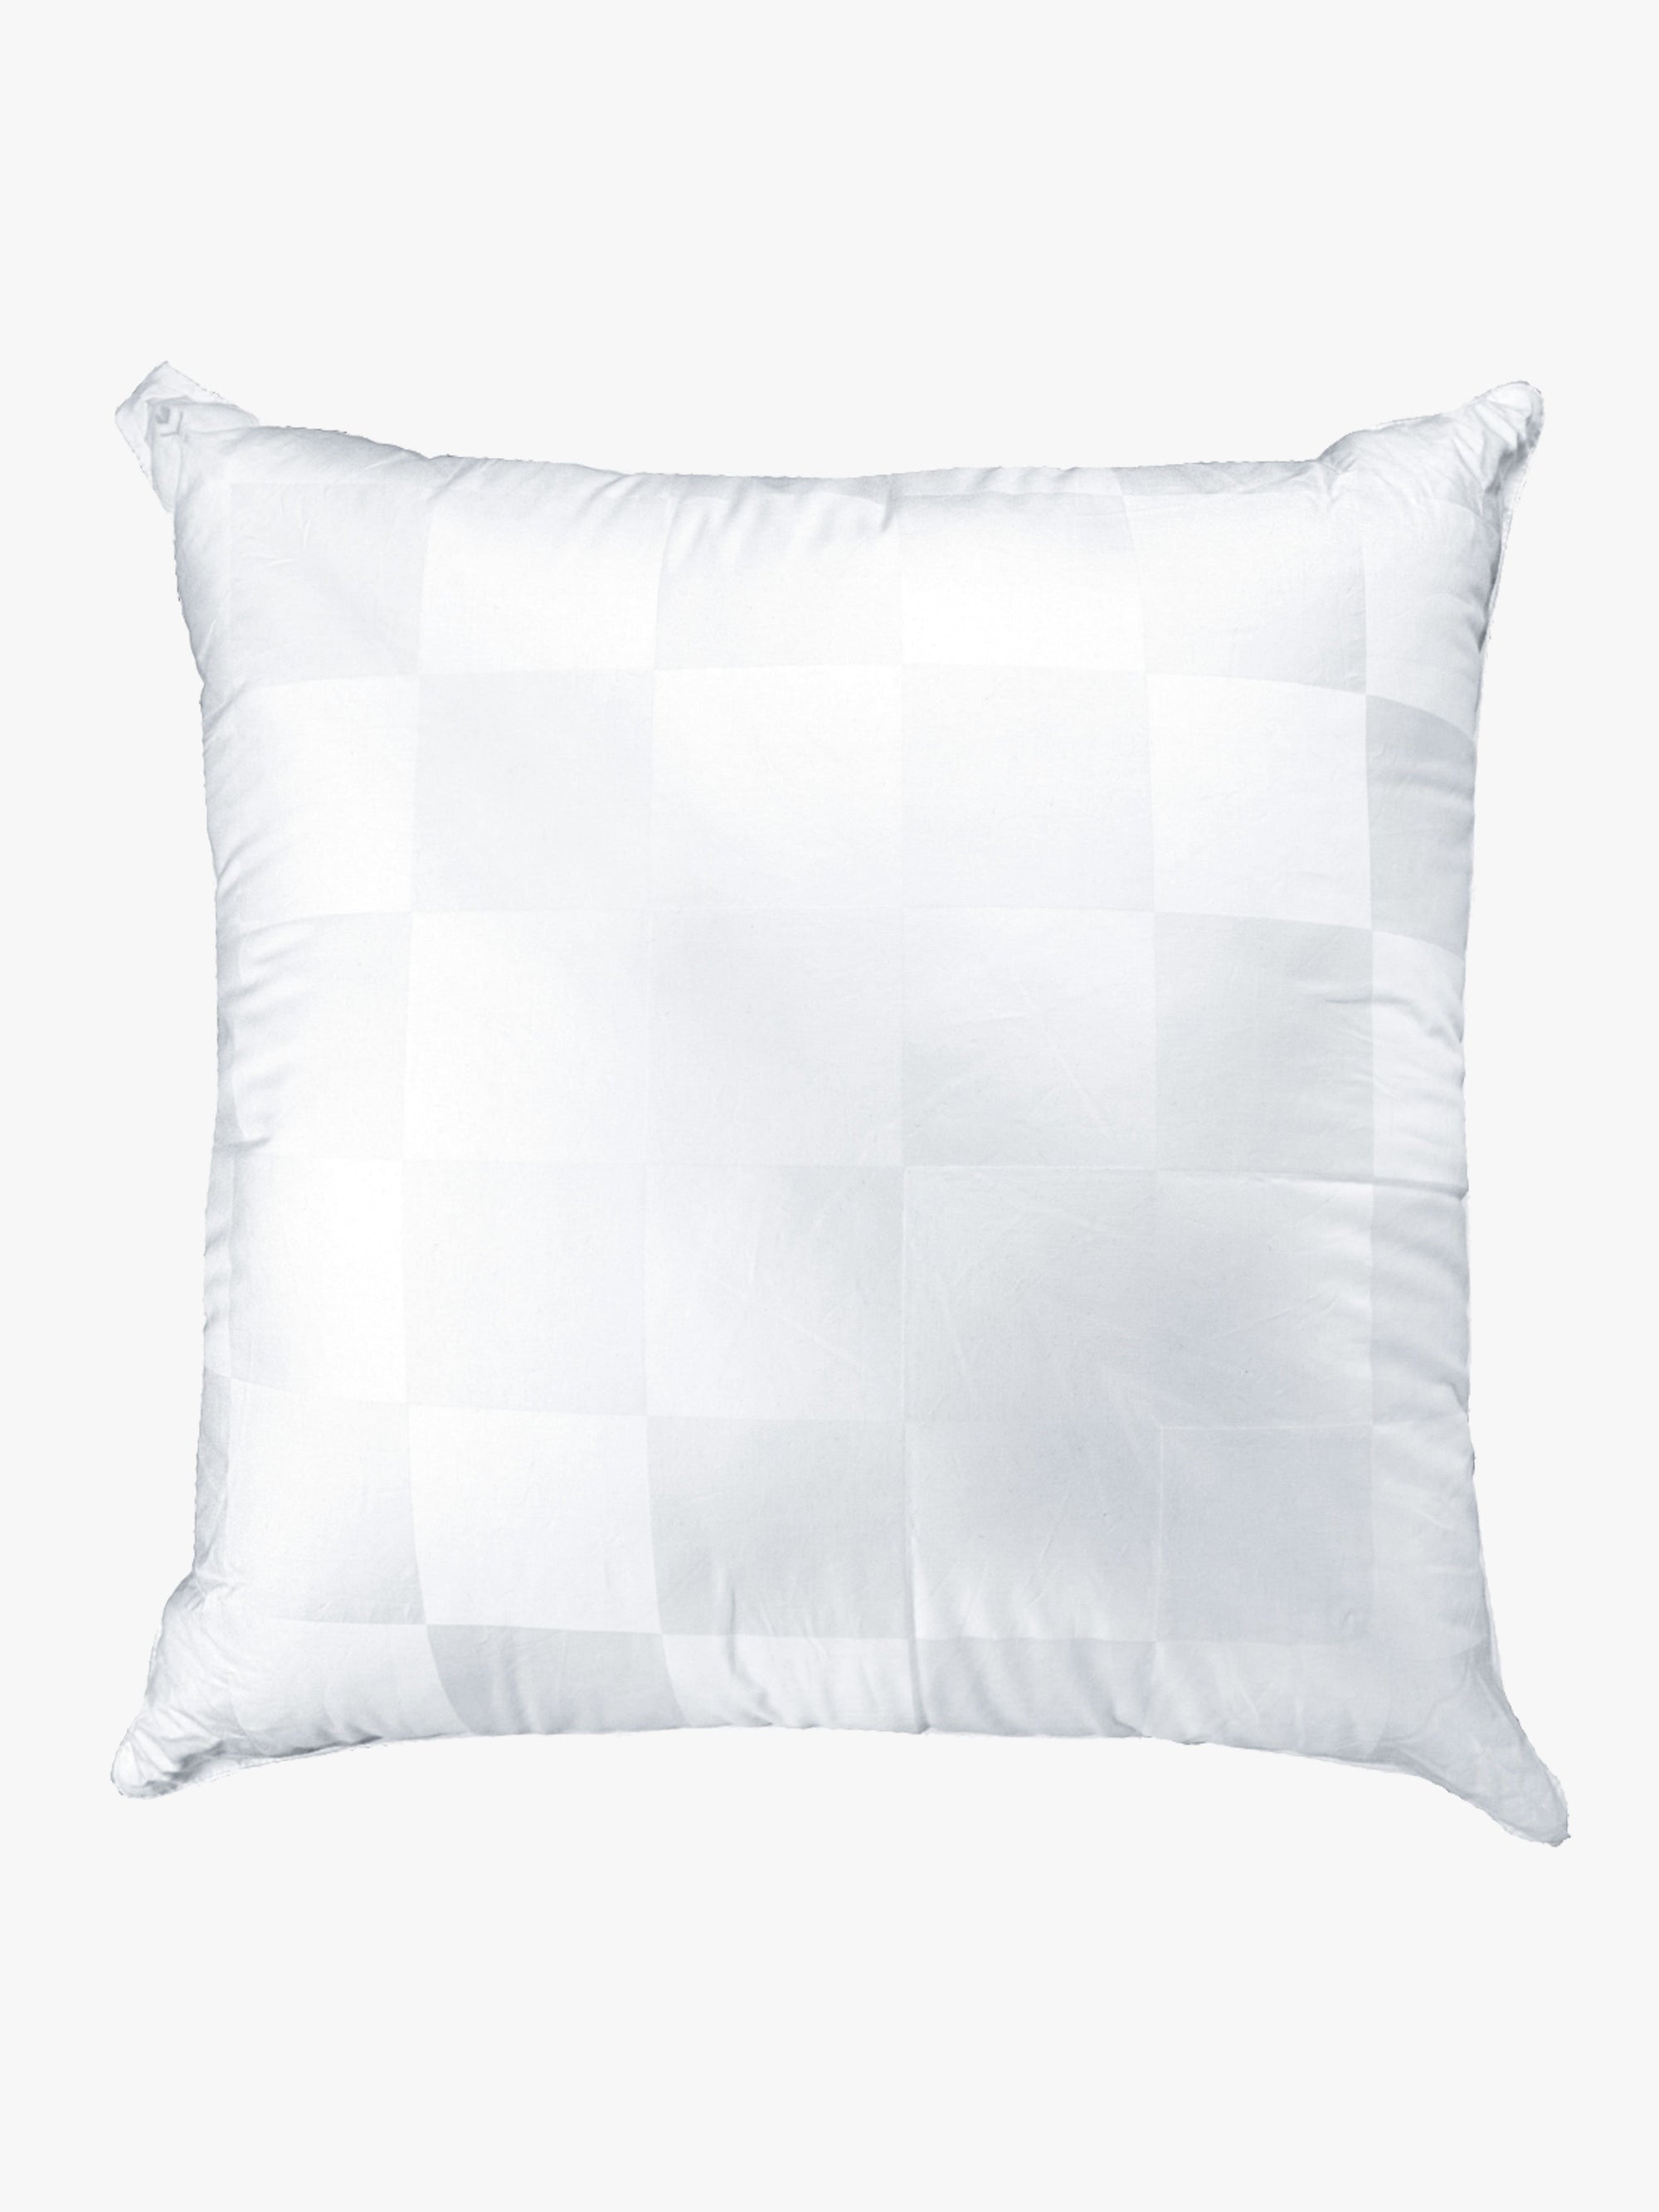 European Pillow Insert Buy Luxury Bed Linen Homewares Online